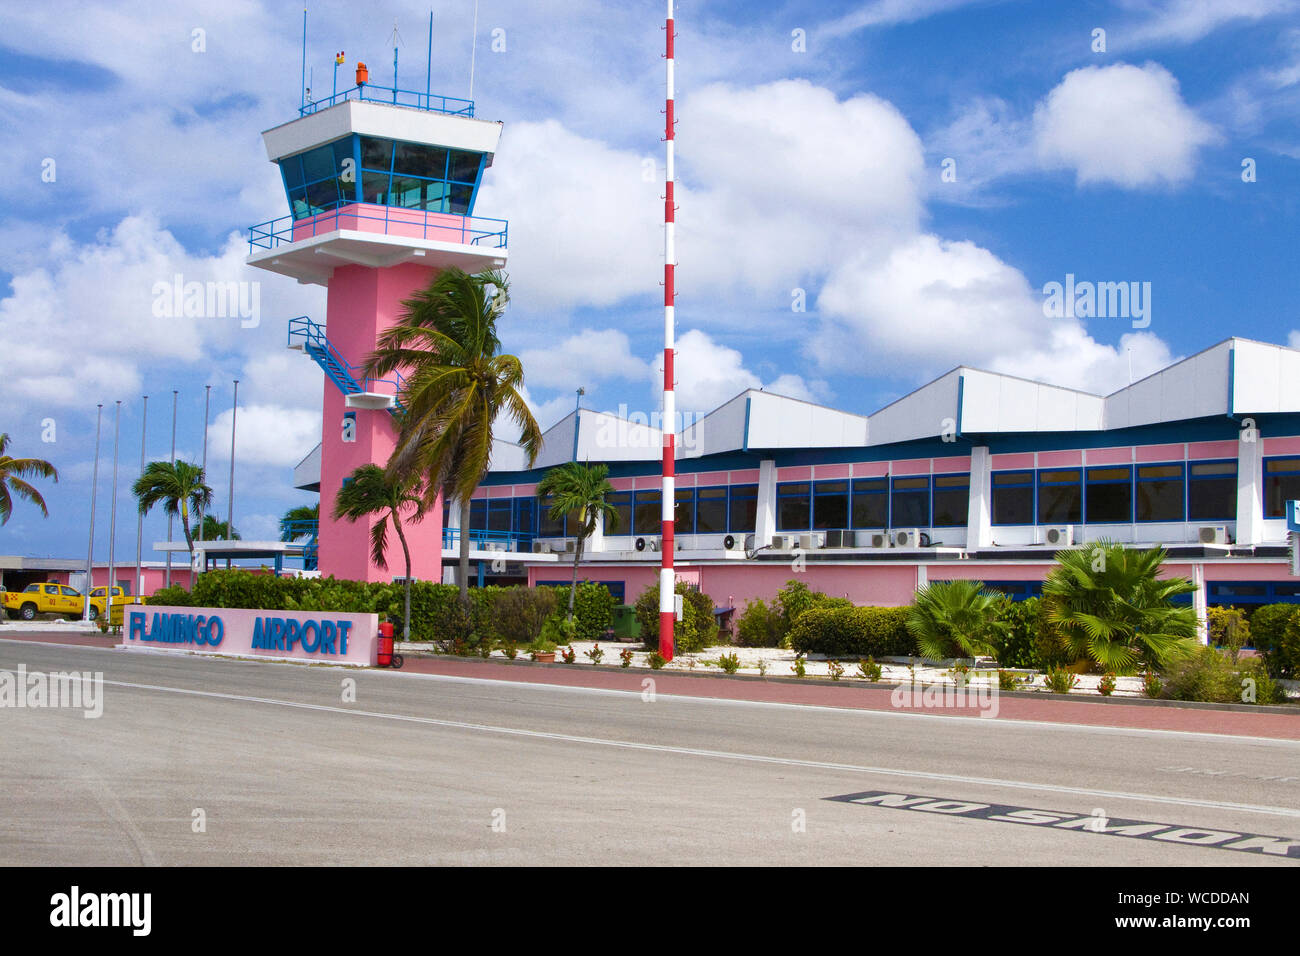 Torre de Flamingo Aeropuerto, el Aeropuerto Internacional de Bonaire, Kralendijk, Bonaire, Antillas Holandesas Foto de stock